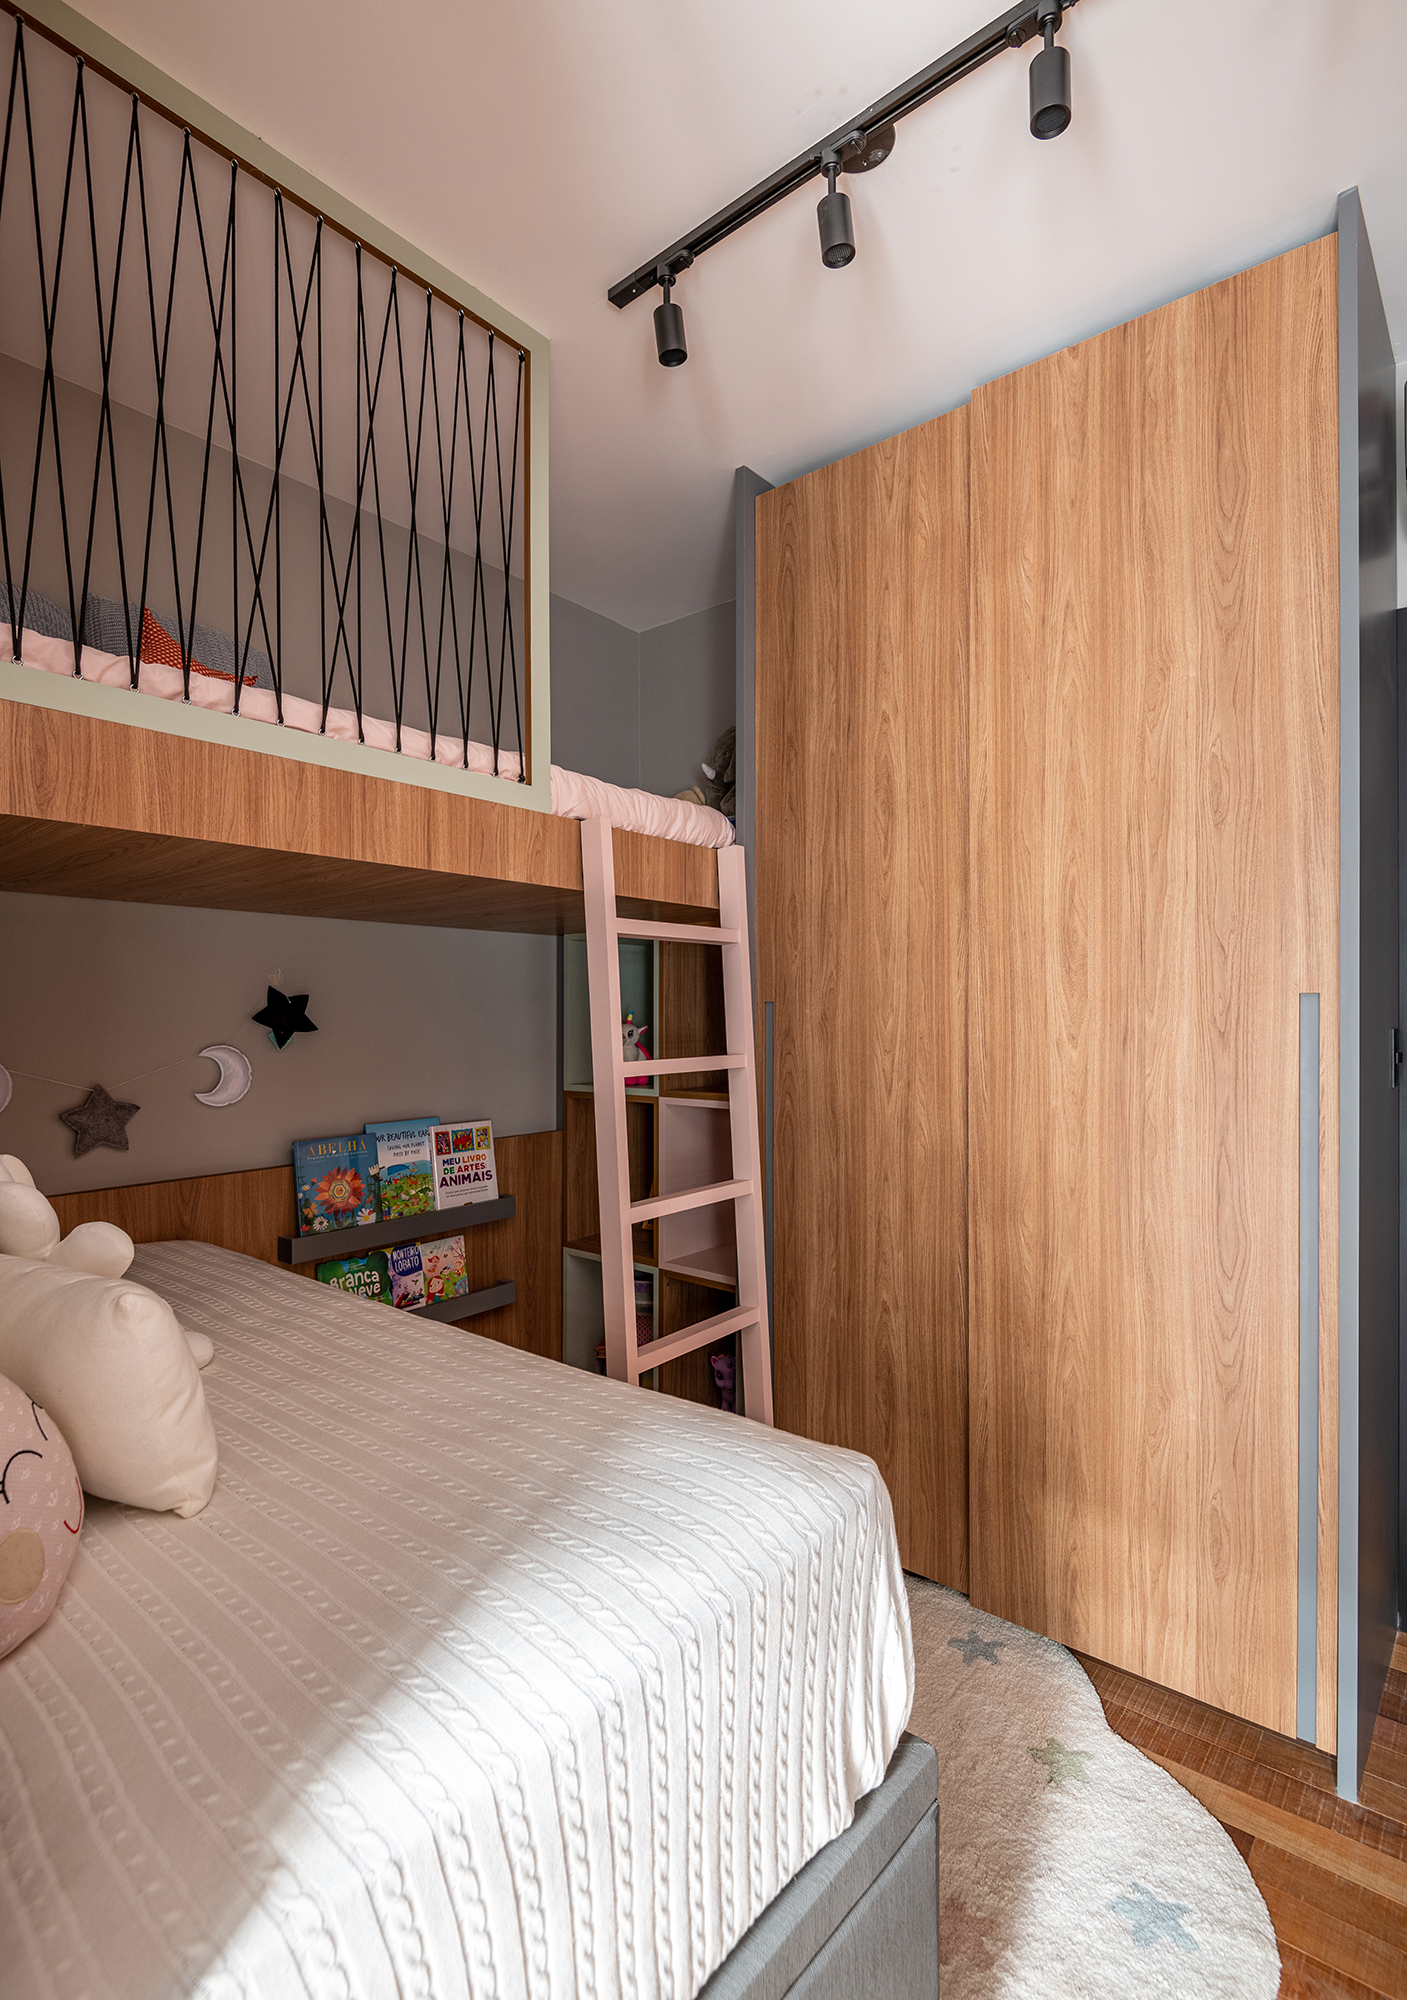 Casa de 200 m² ganha estilo industrial moderno, iluminação aparente e monocromia. Projeto de Dani Espírito Santo. Na foto, quarto infantil com cama suspensa, escada e armário.